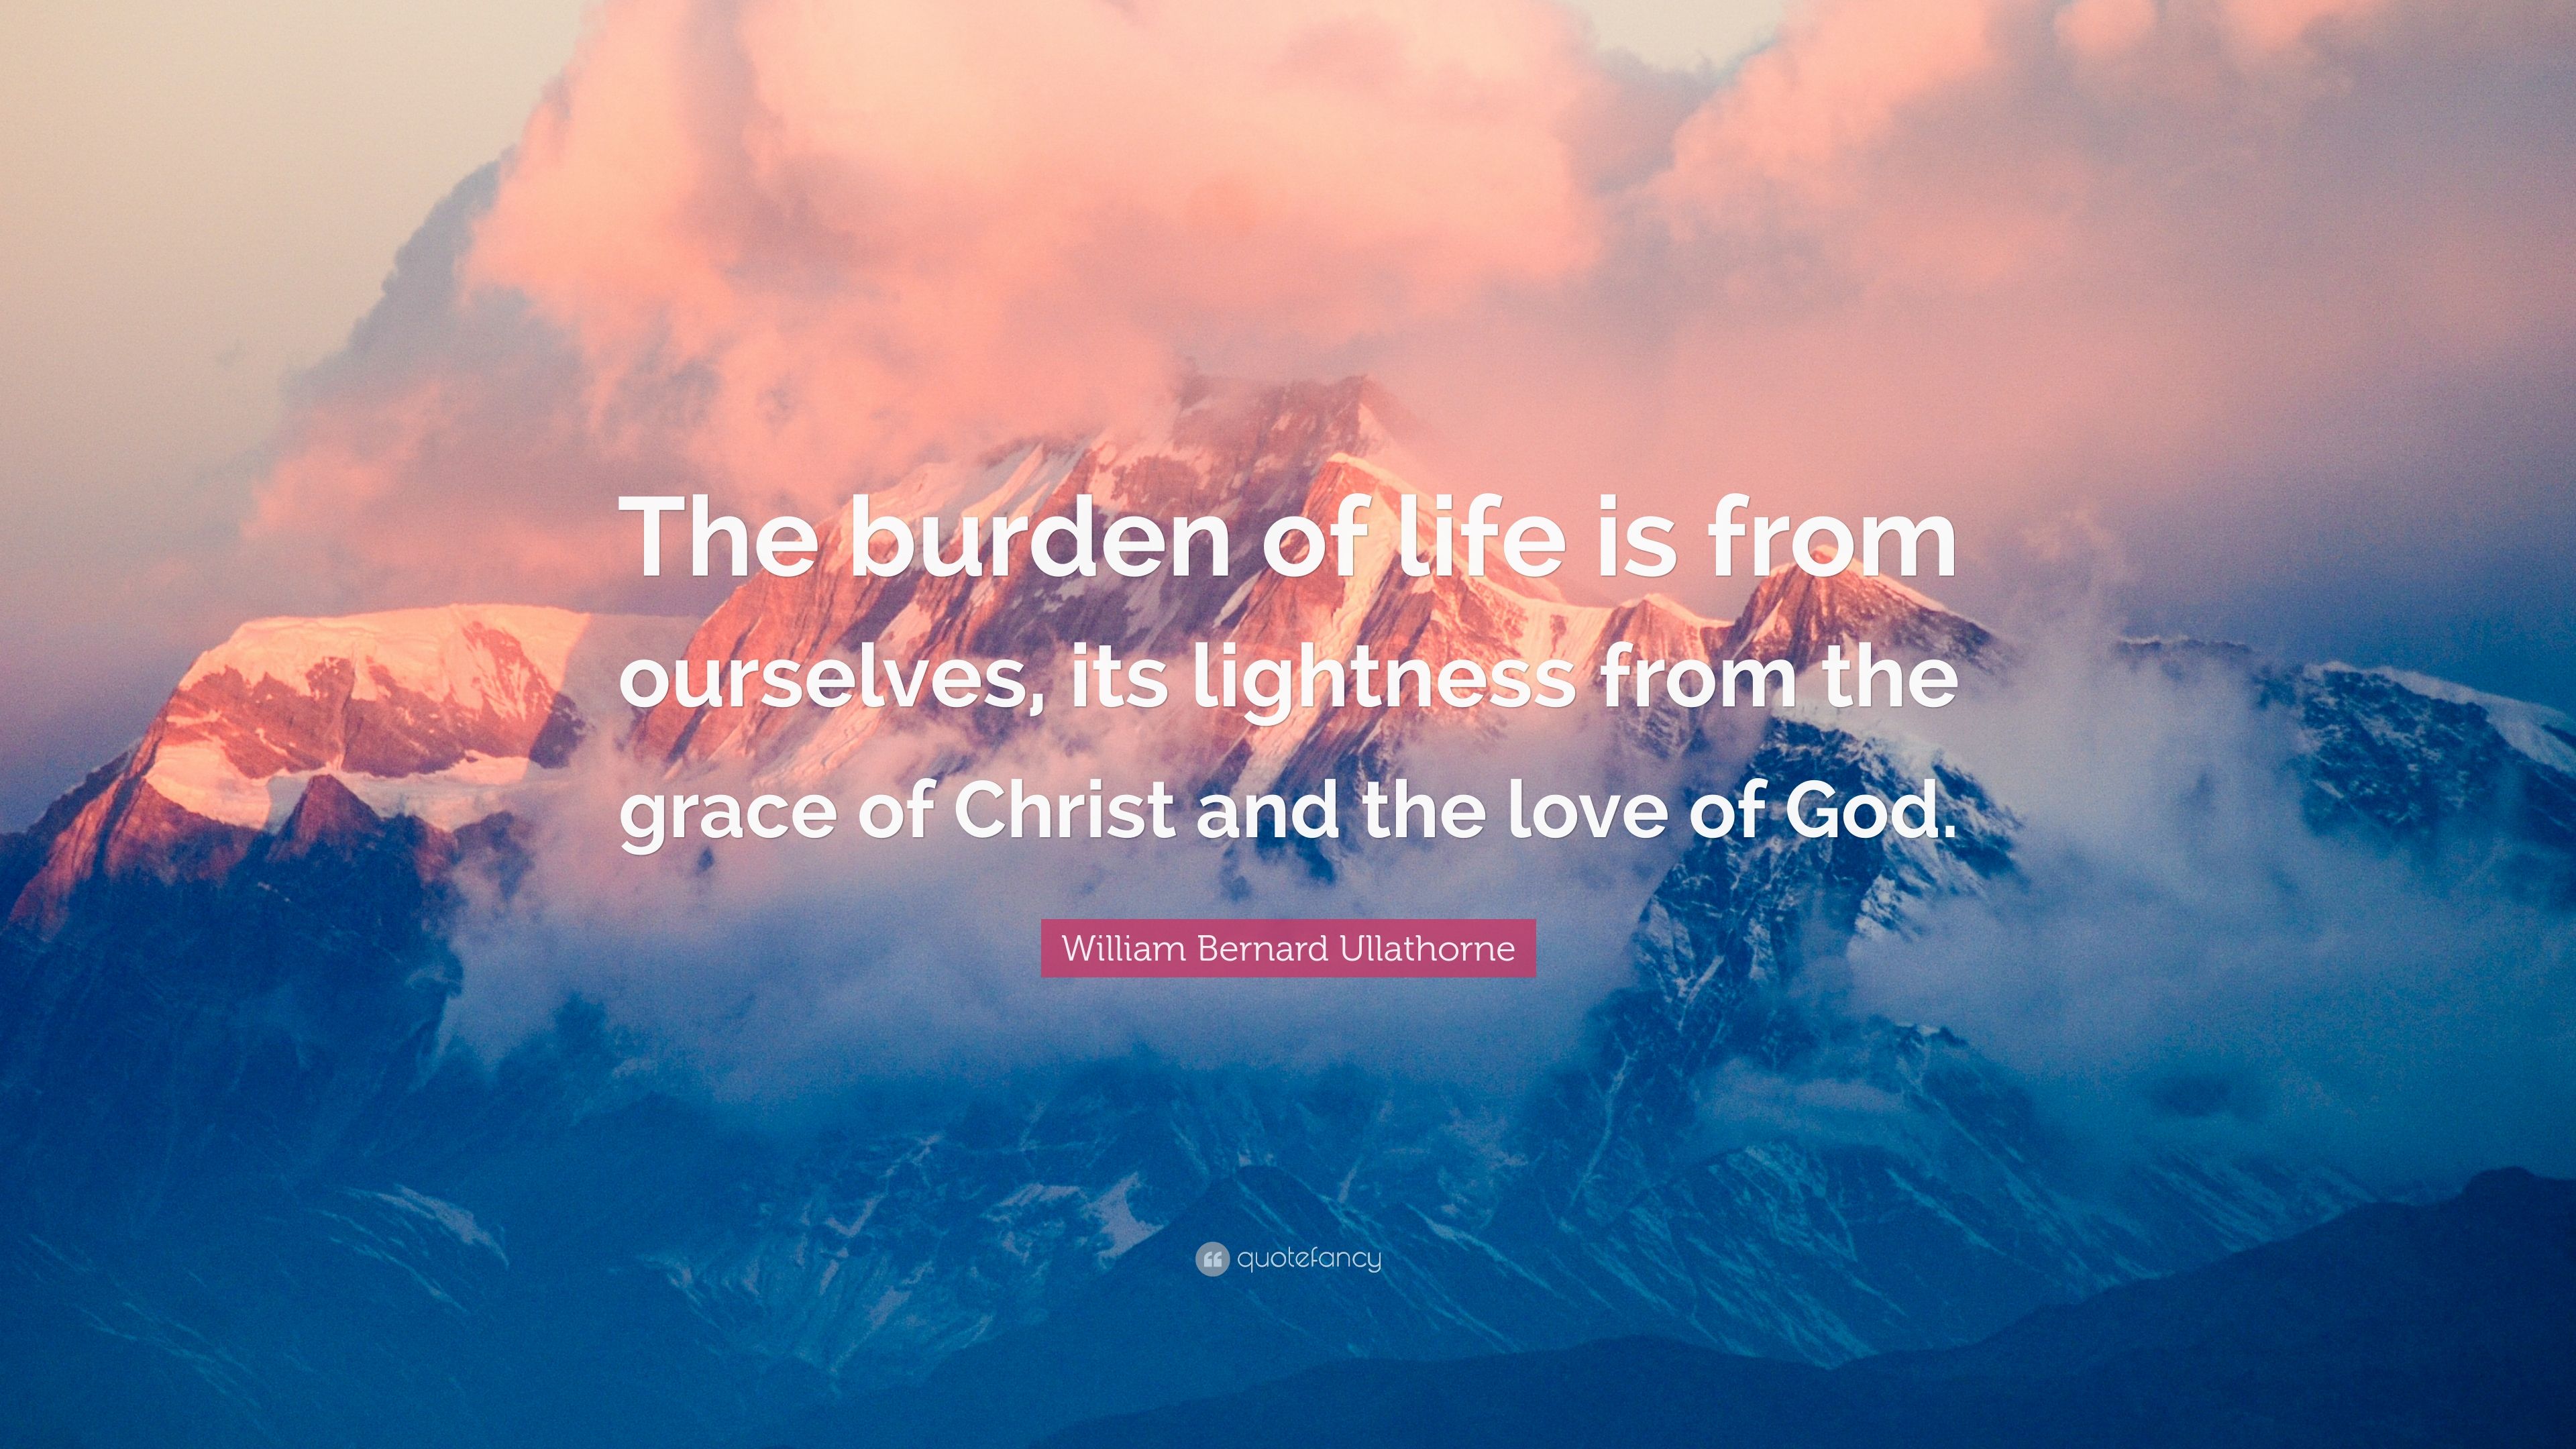 William Bernard Ullathorne Quote: “The burden of life is from ...